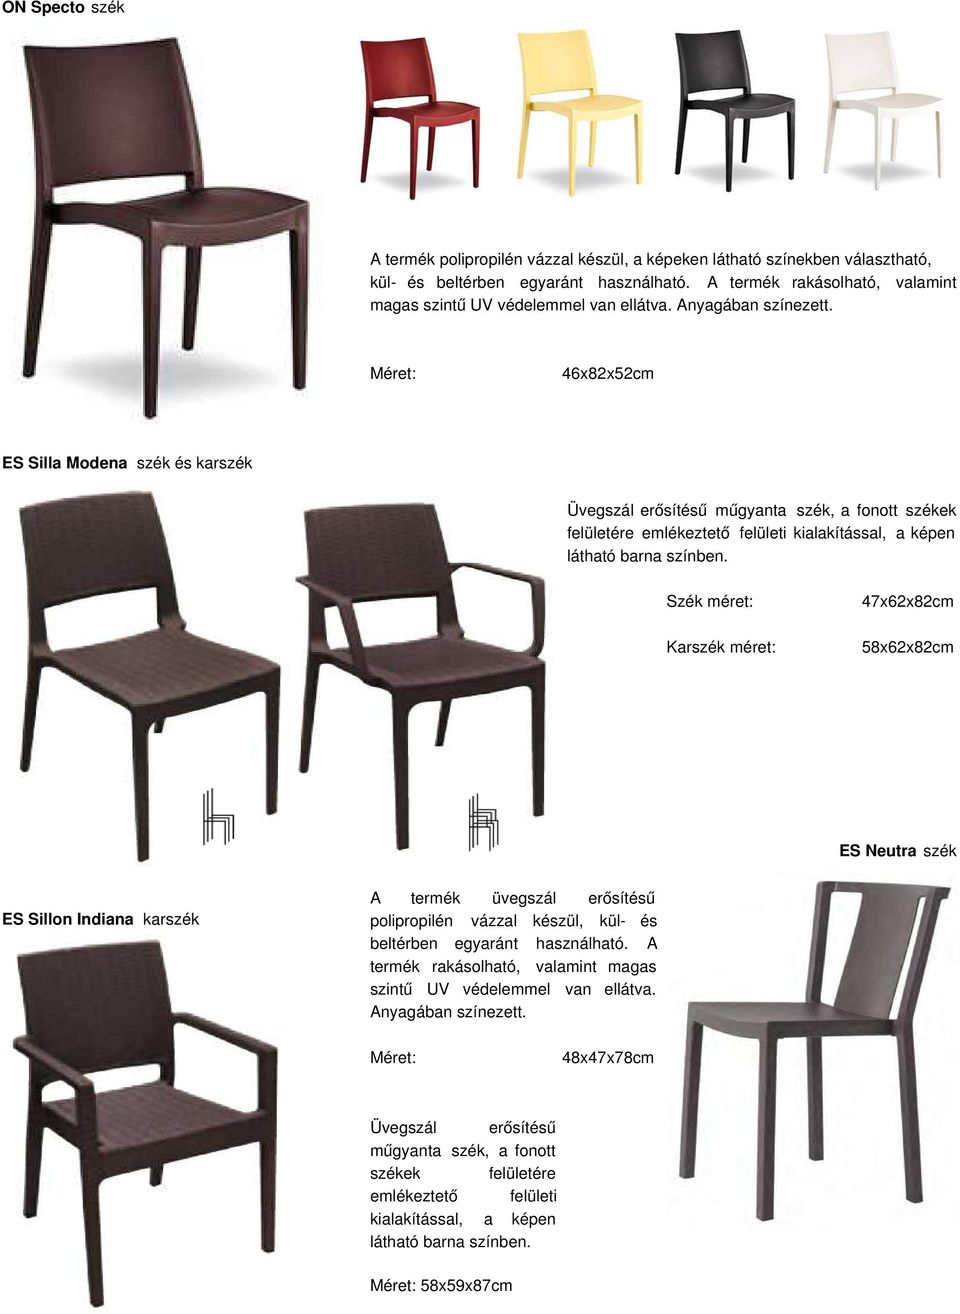 46x82x52cm ES Silla Modena szék és karszék Üvegszál erősítésű műgyanta szék, a fonott székek felületére emlékeztető felületi kialakítással, a képen látható barna színben.